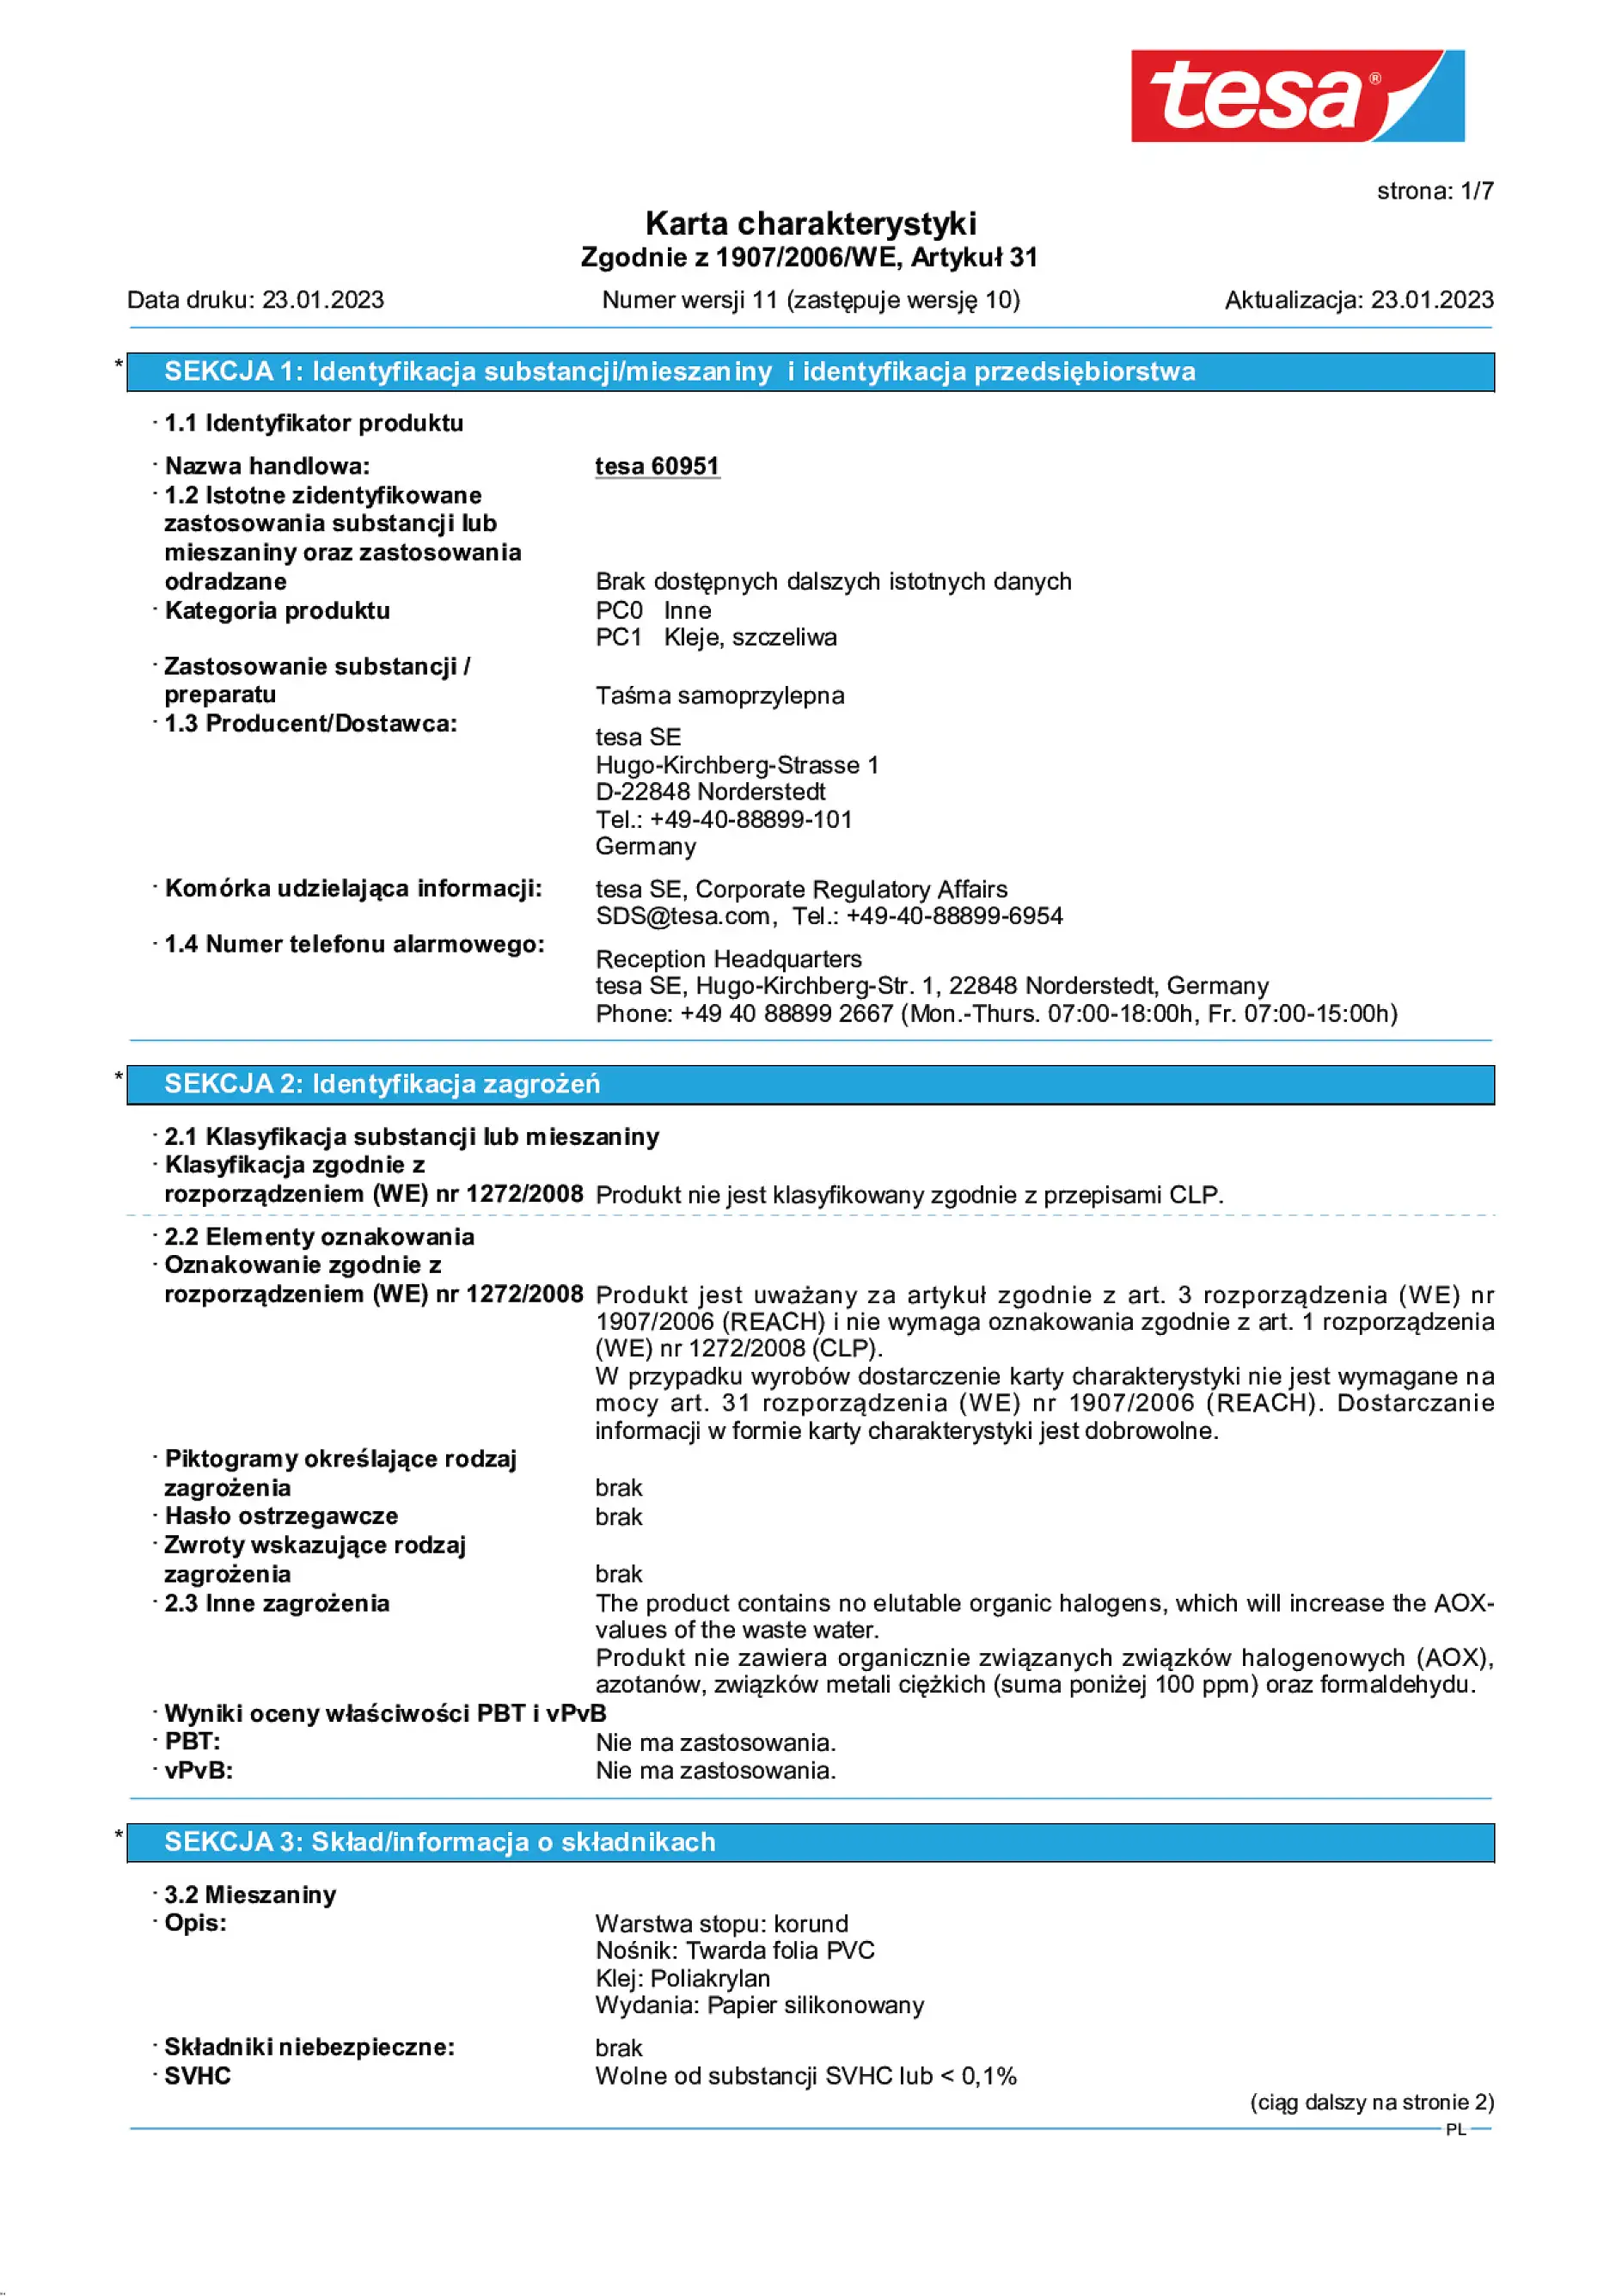 Safety data sheet_tesa® 60951_pl-PL_v11